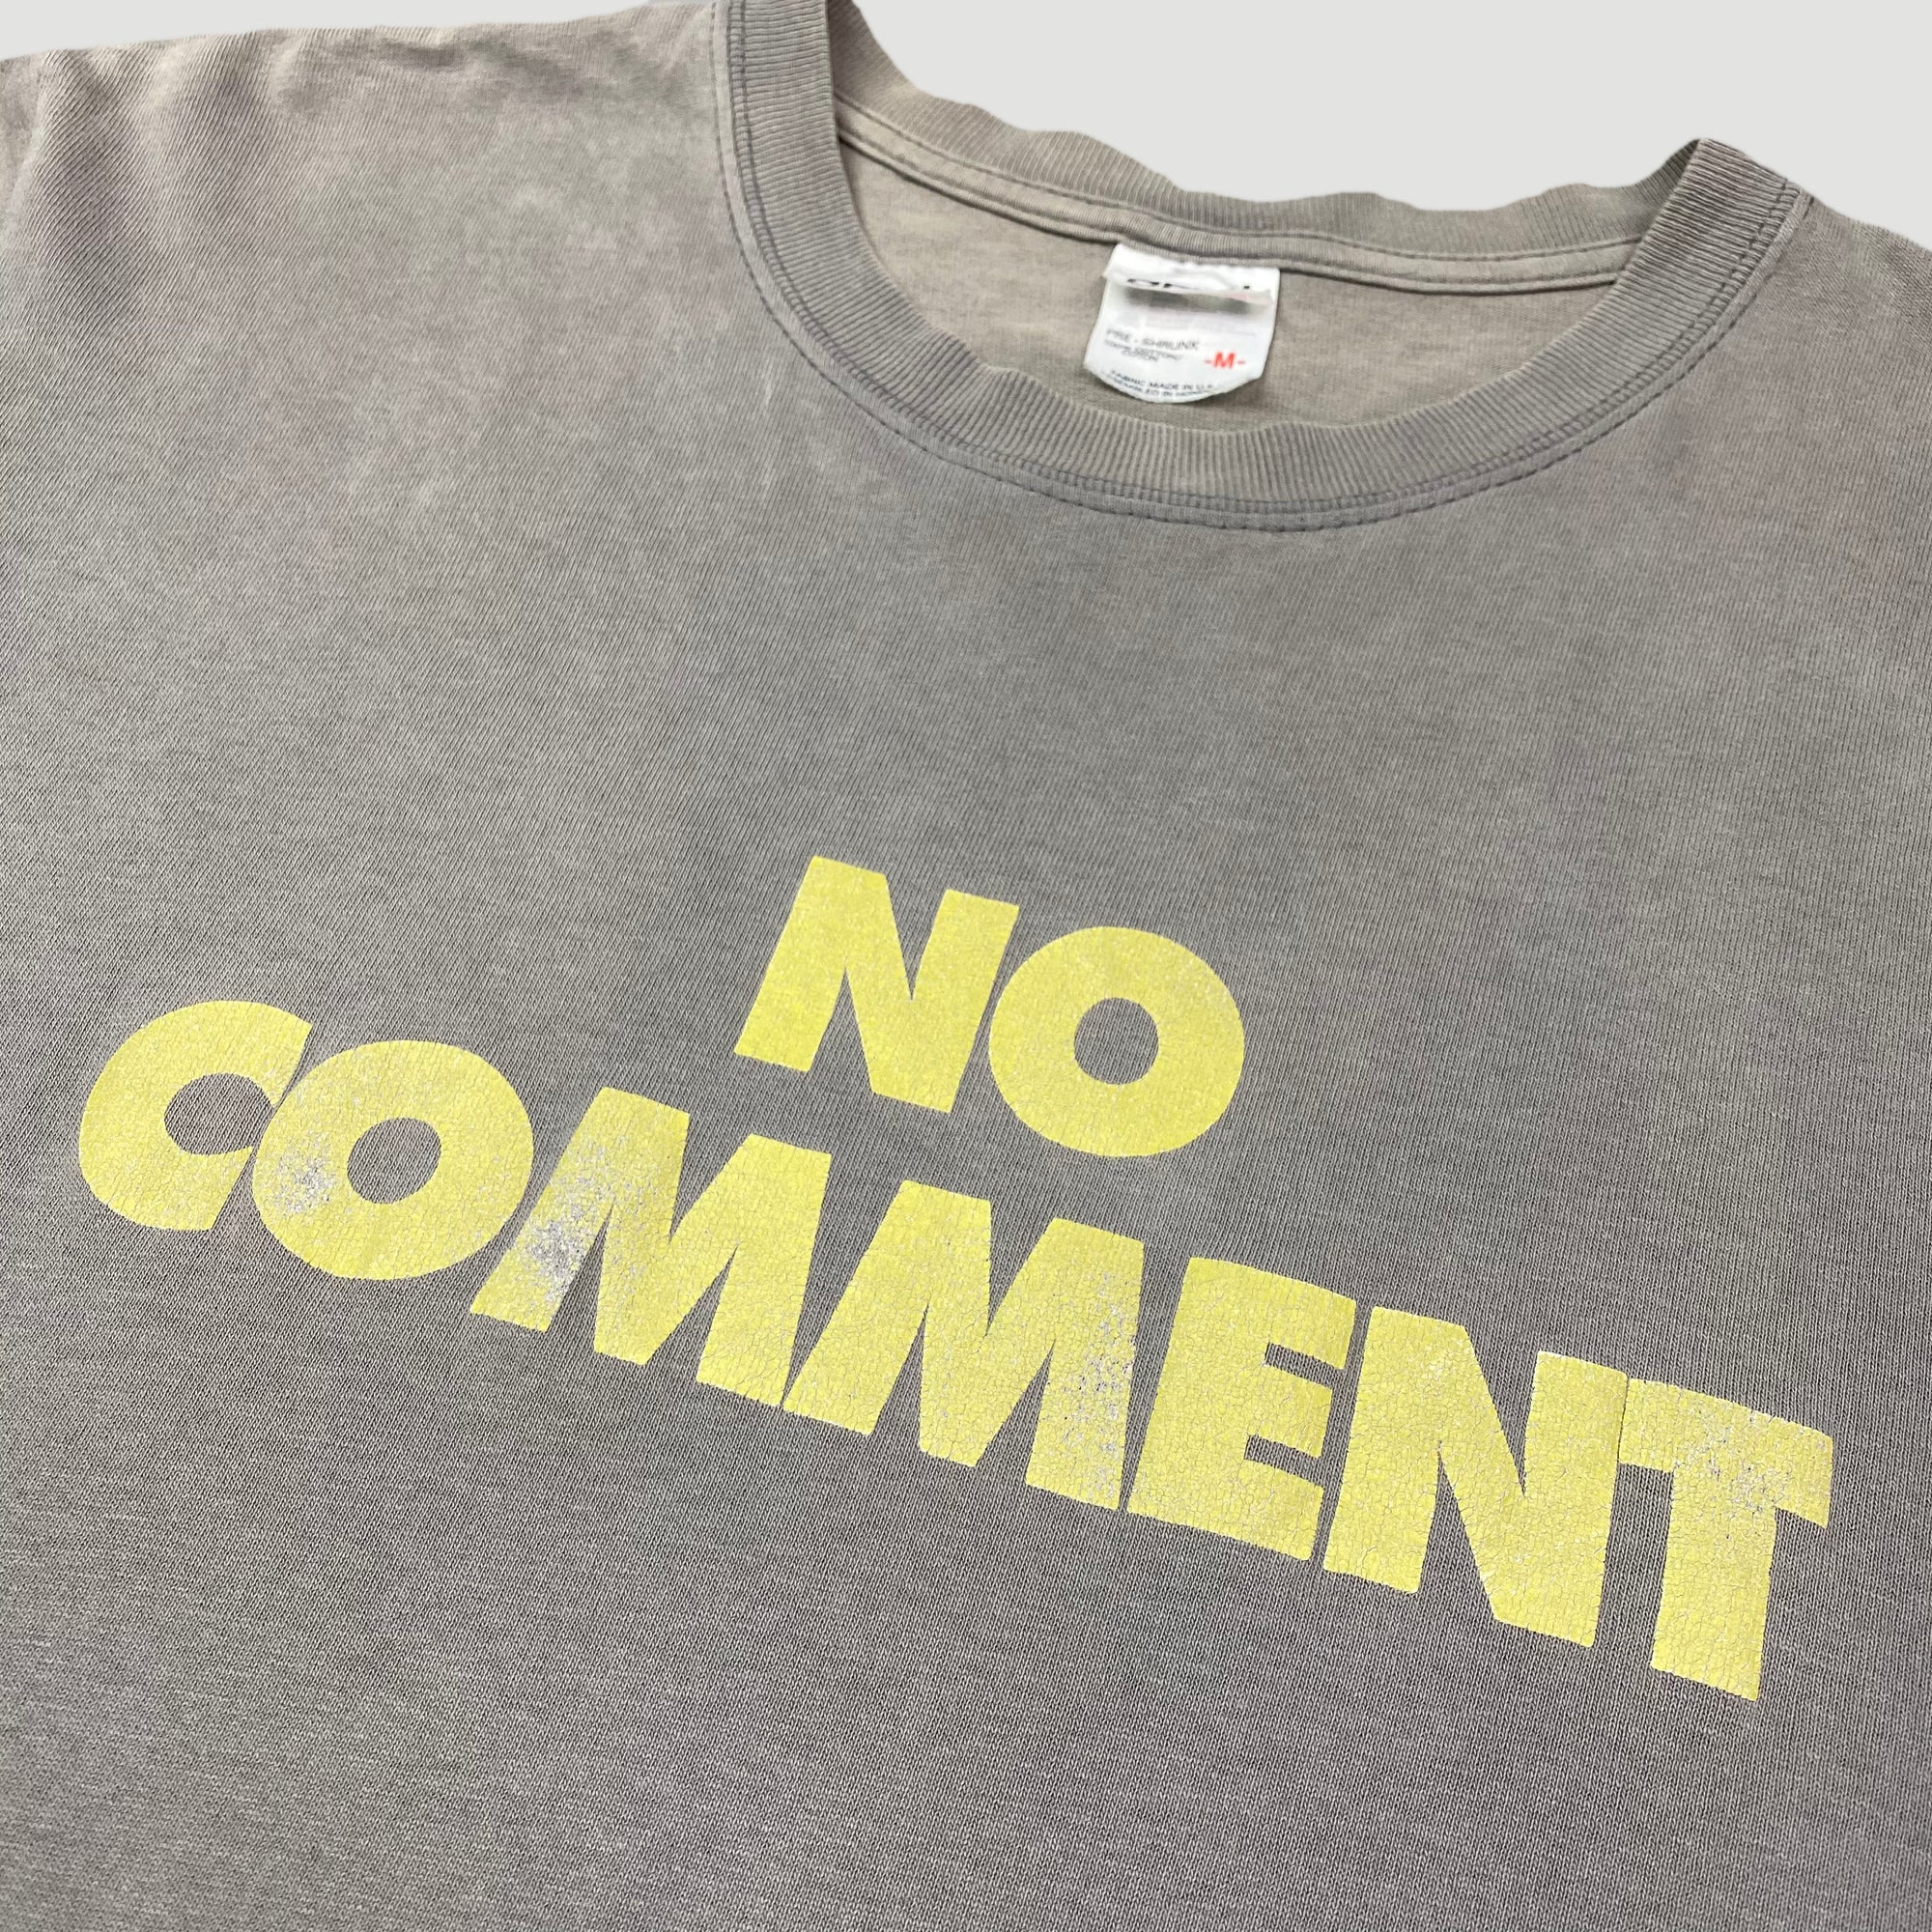 Mid 90's Sub Pop 'No Comment' T-Shirt